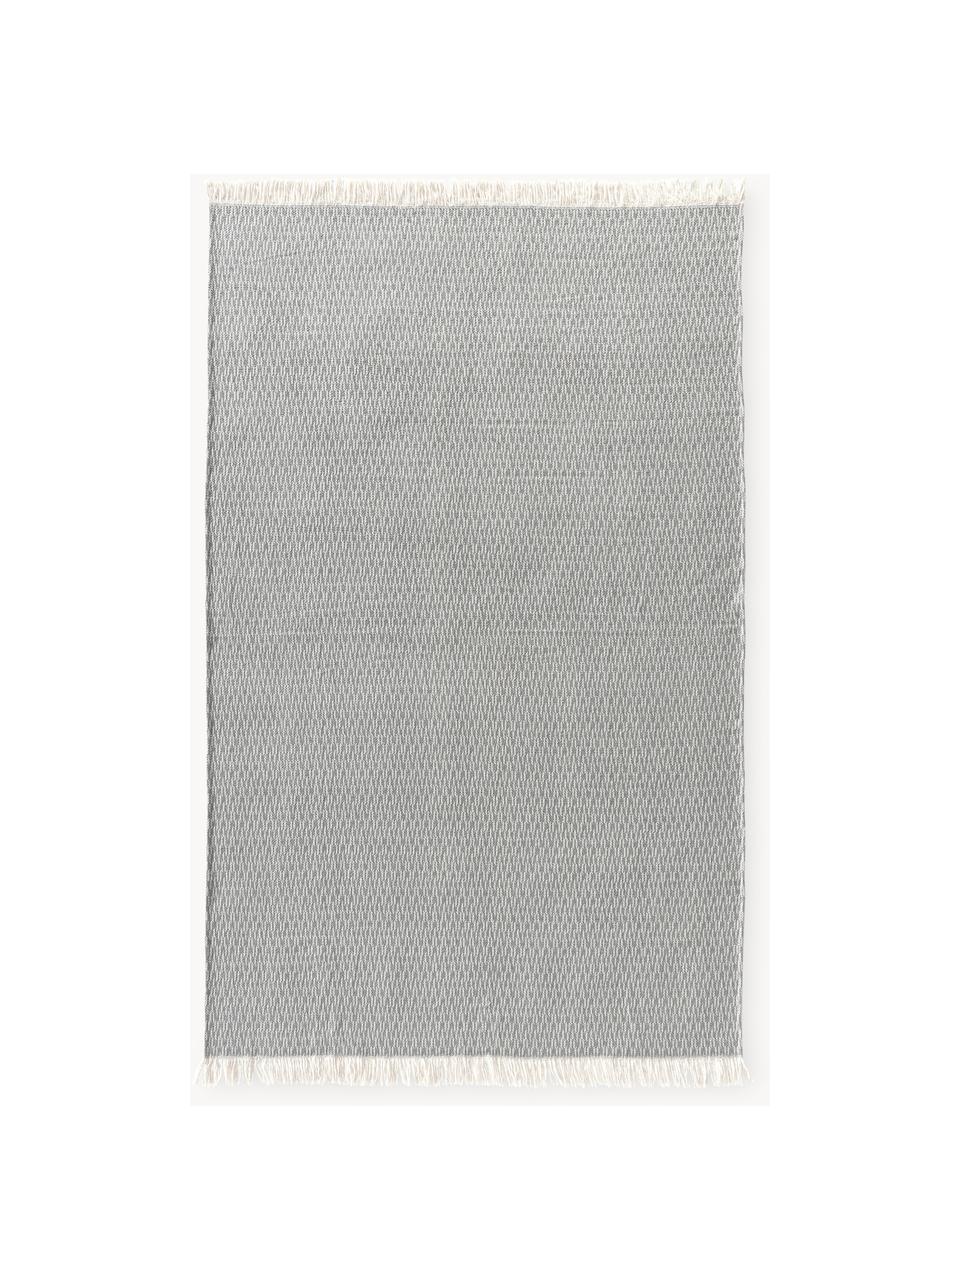 Decke Alistair mit Fischgrätmuster und Fransen, 80% Baumwollle
20% Polyacrylic, Dunkelgrau, Off White, B 130 x L 170 cm